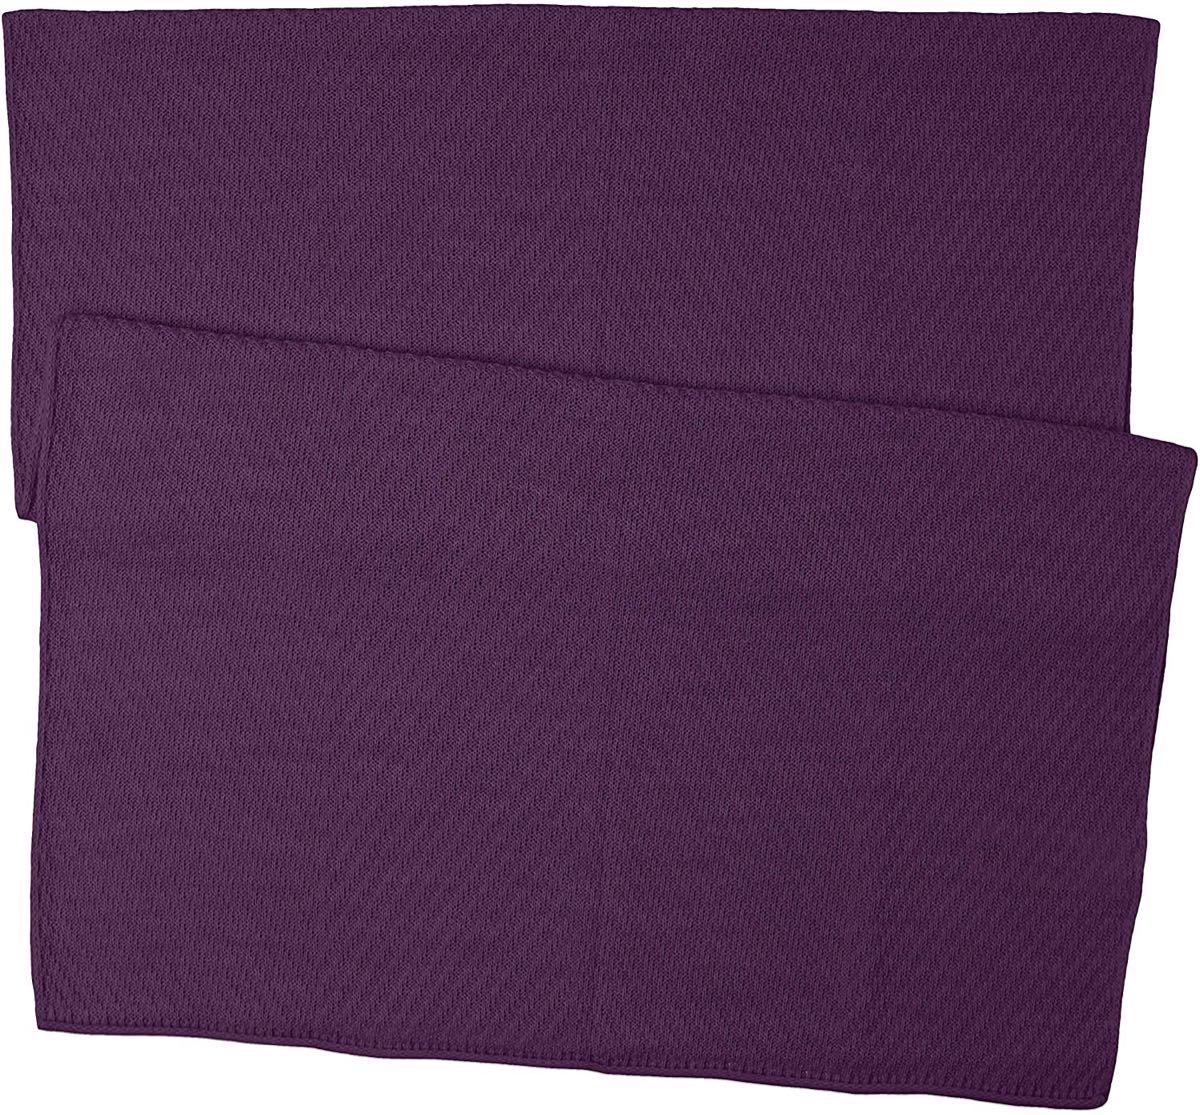 MAMMUT マムート マフラー ロゼッグスカーフ パープル(紫) ユニセックスF 新品